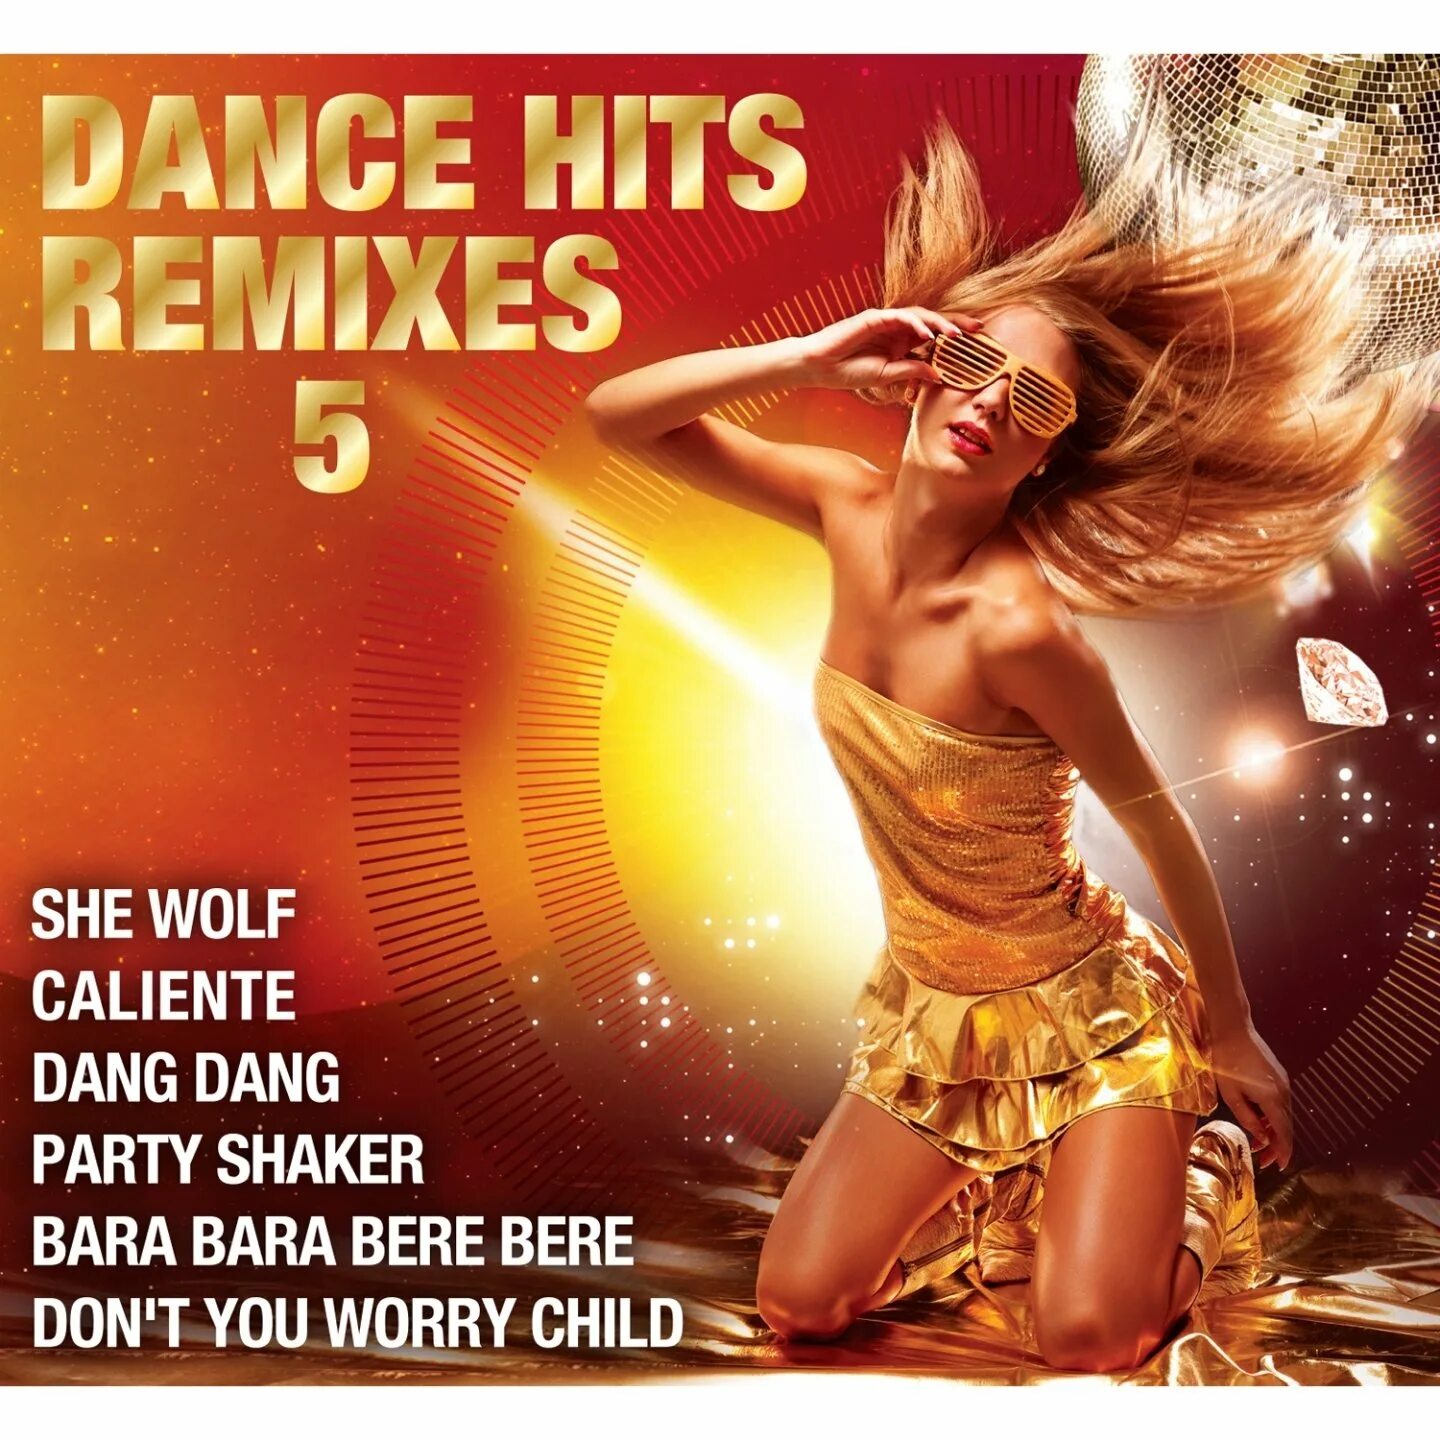 Дэнс хит. Обложки альбомов Dance Hits. Dance Hits августа. Картинка Dance Hits. Remix dance hit